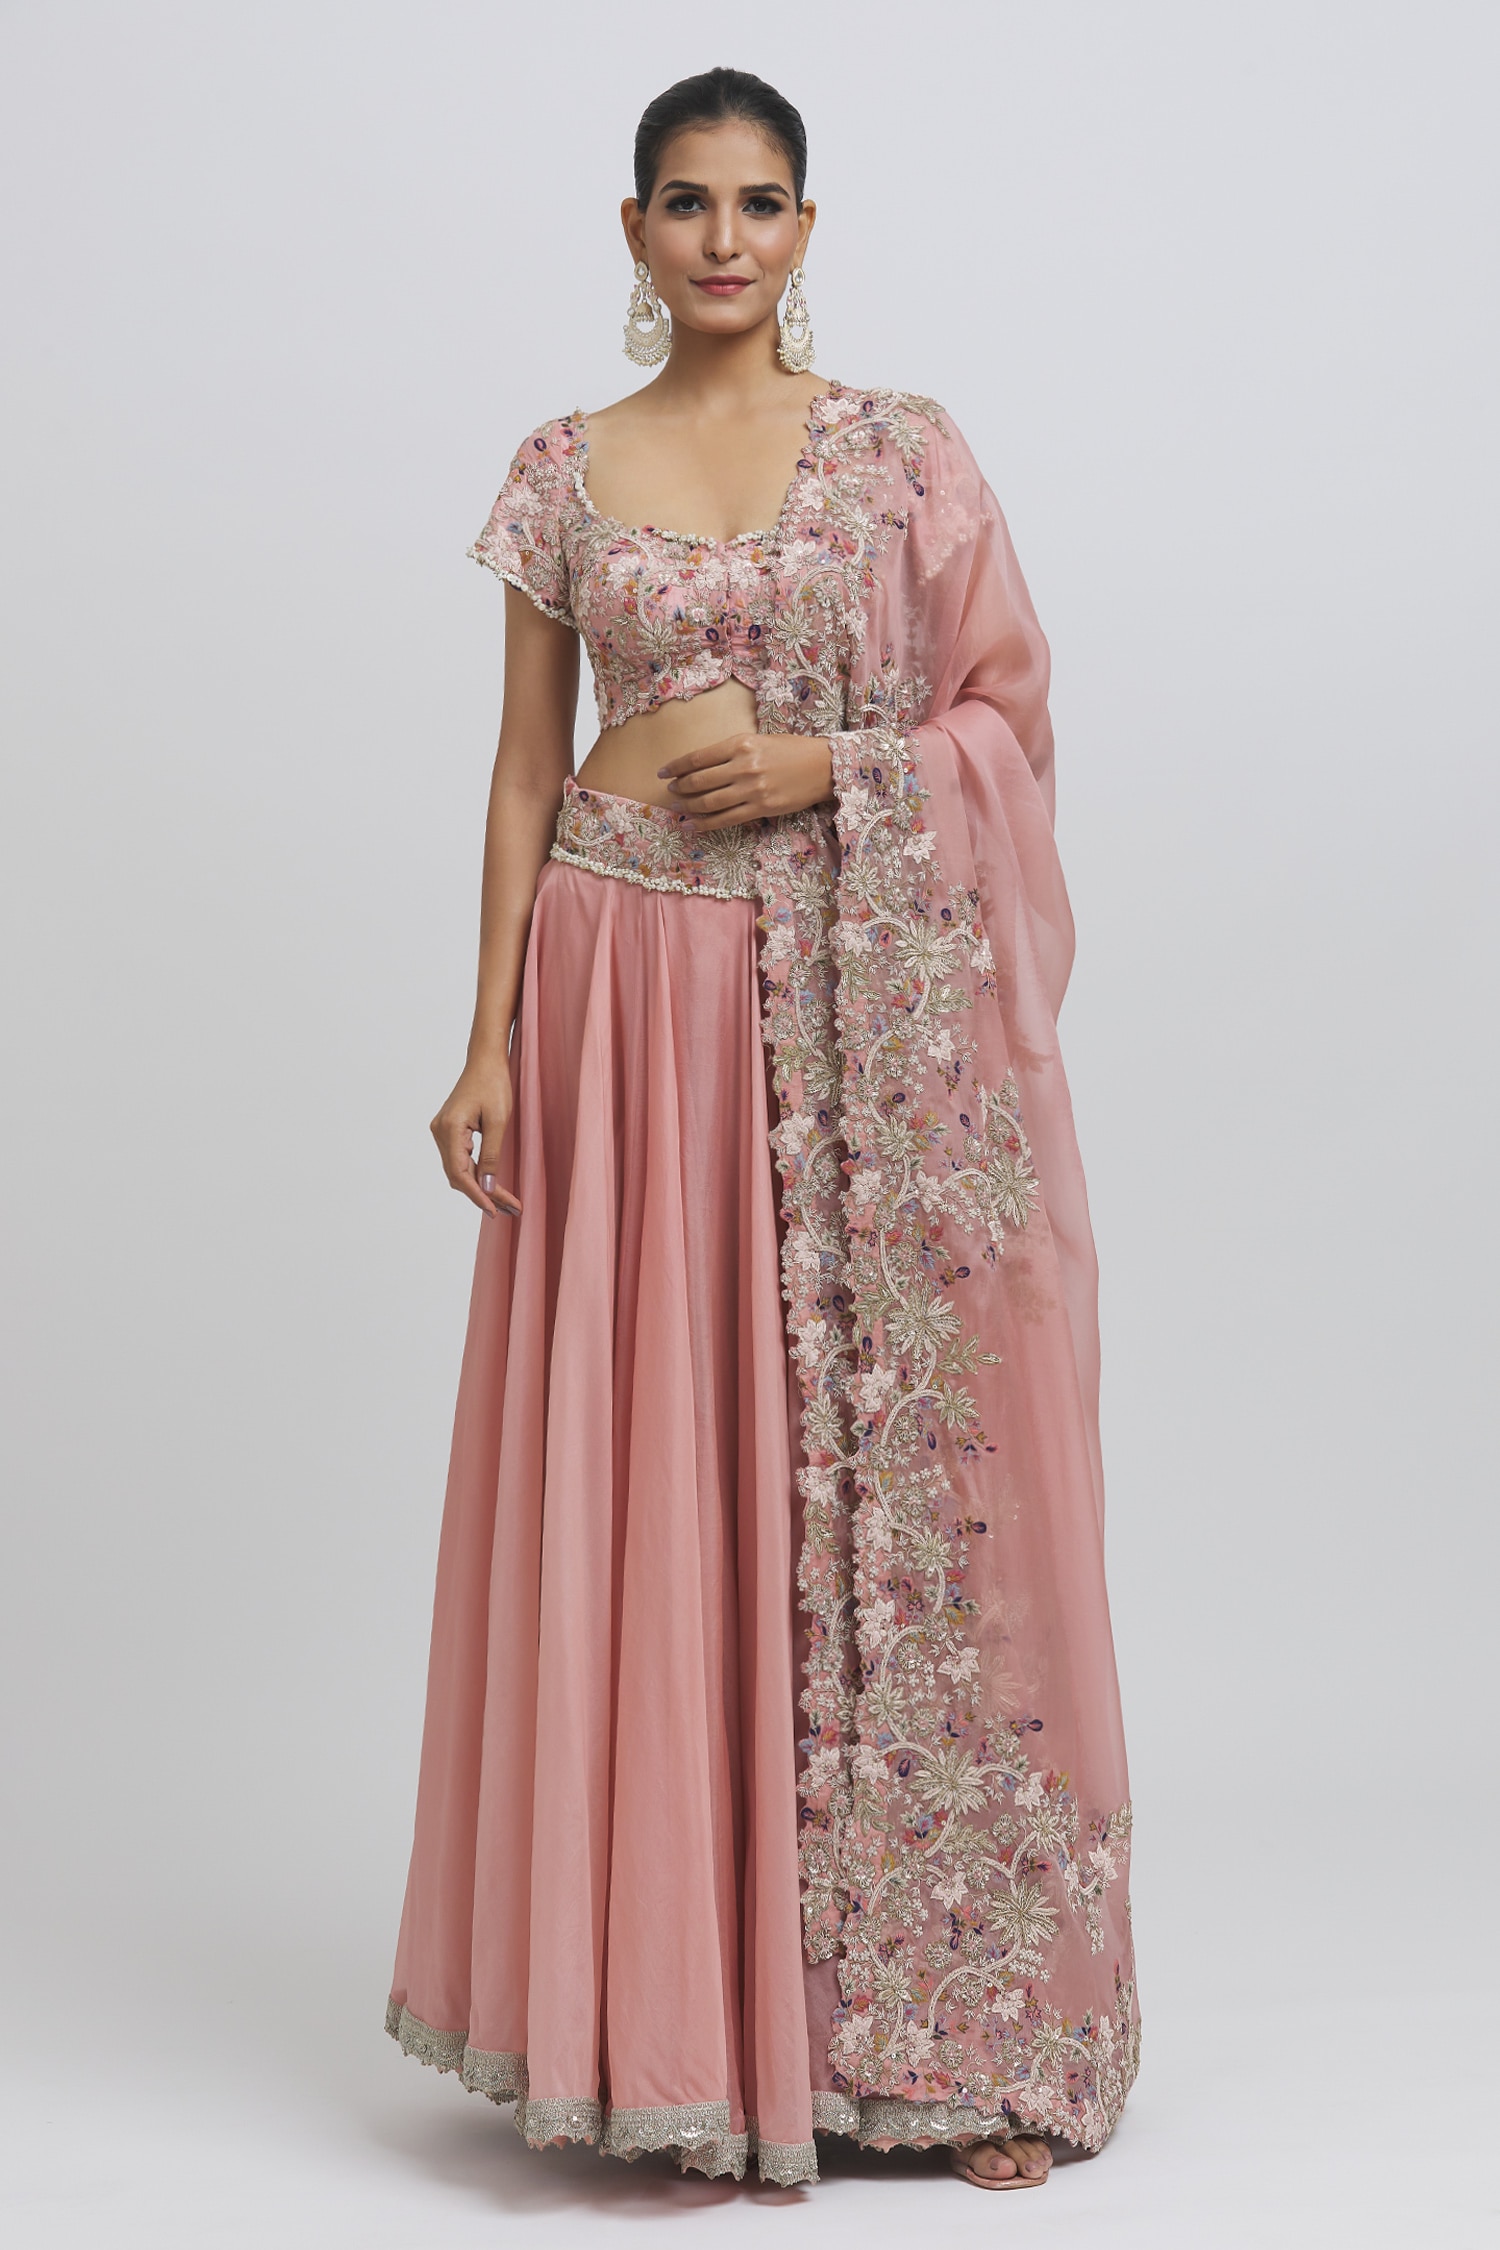 Anamika Khanna - India 🇮🇳 | Bridal lehenga blouse design, Blouse design  models, Indian bridal outfits